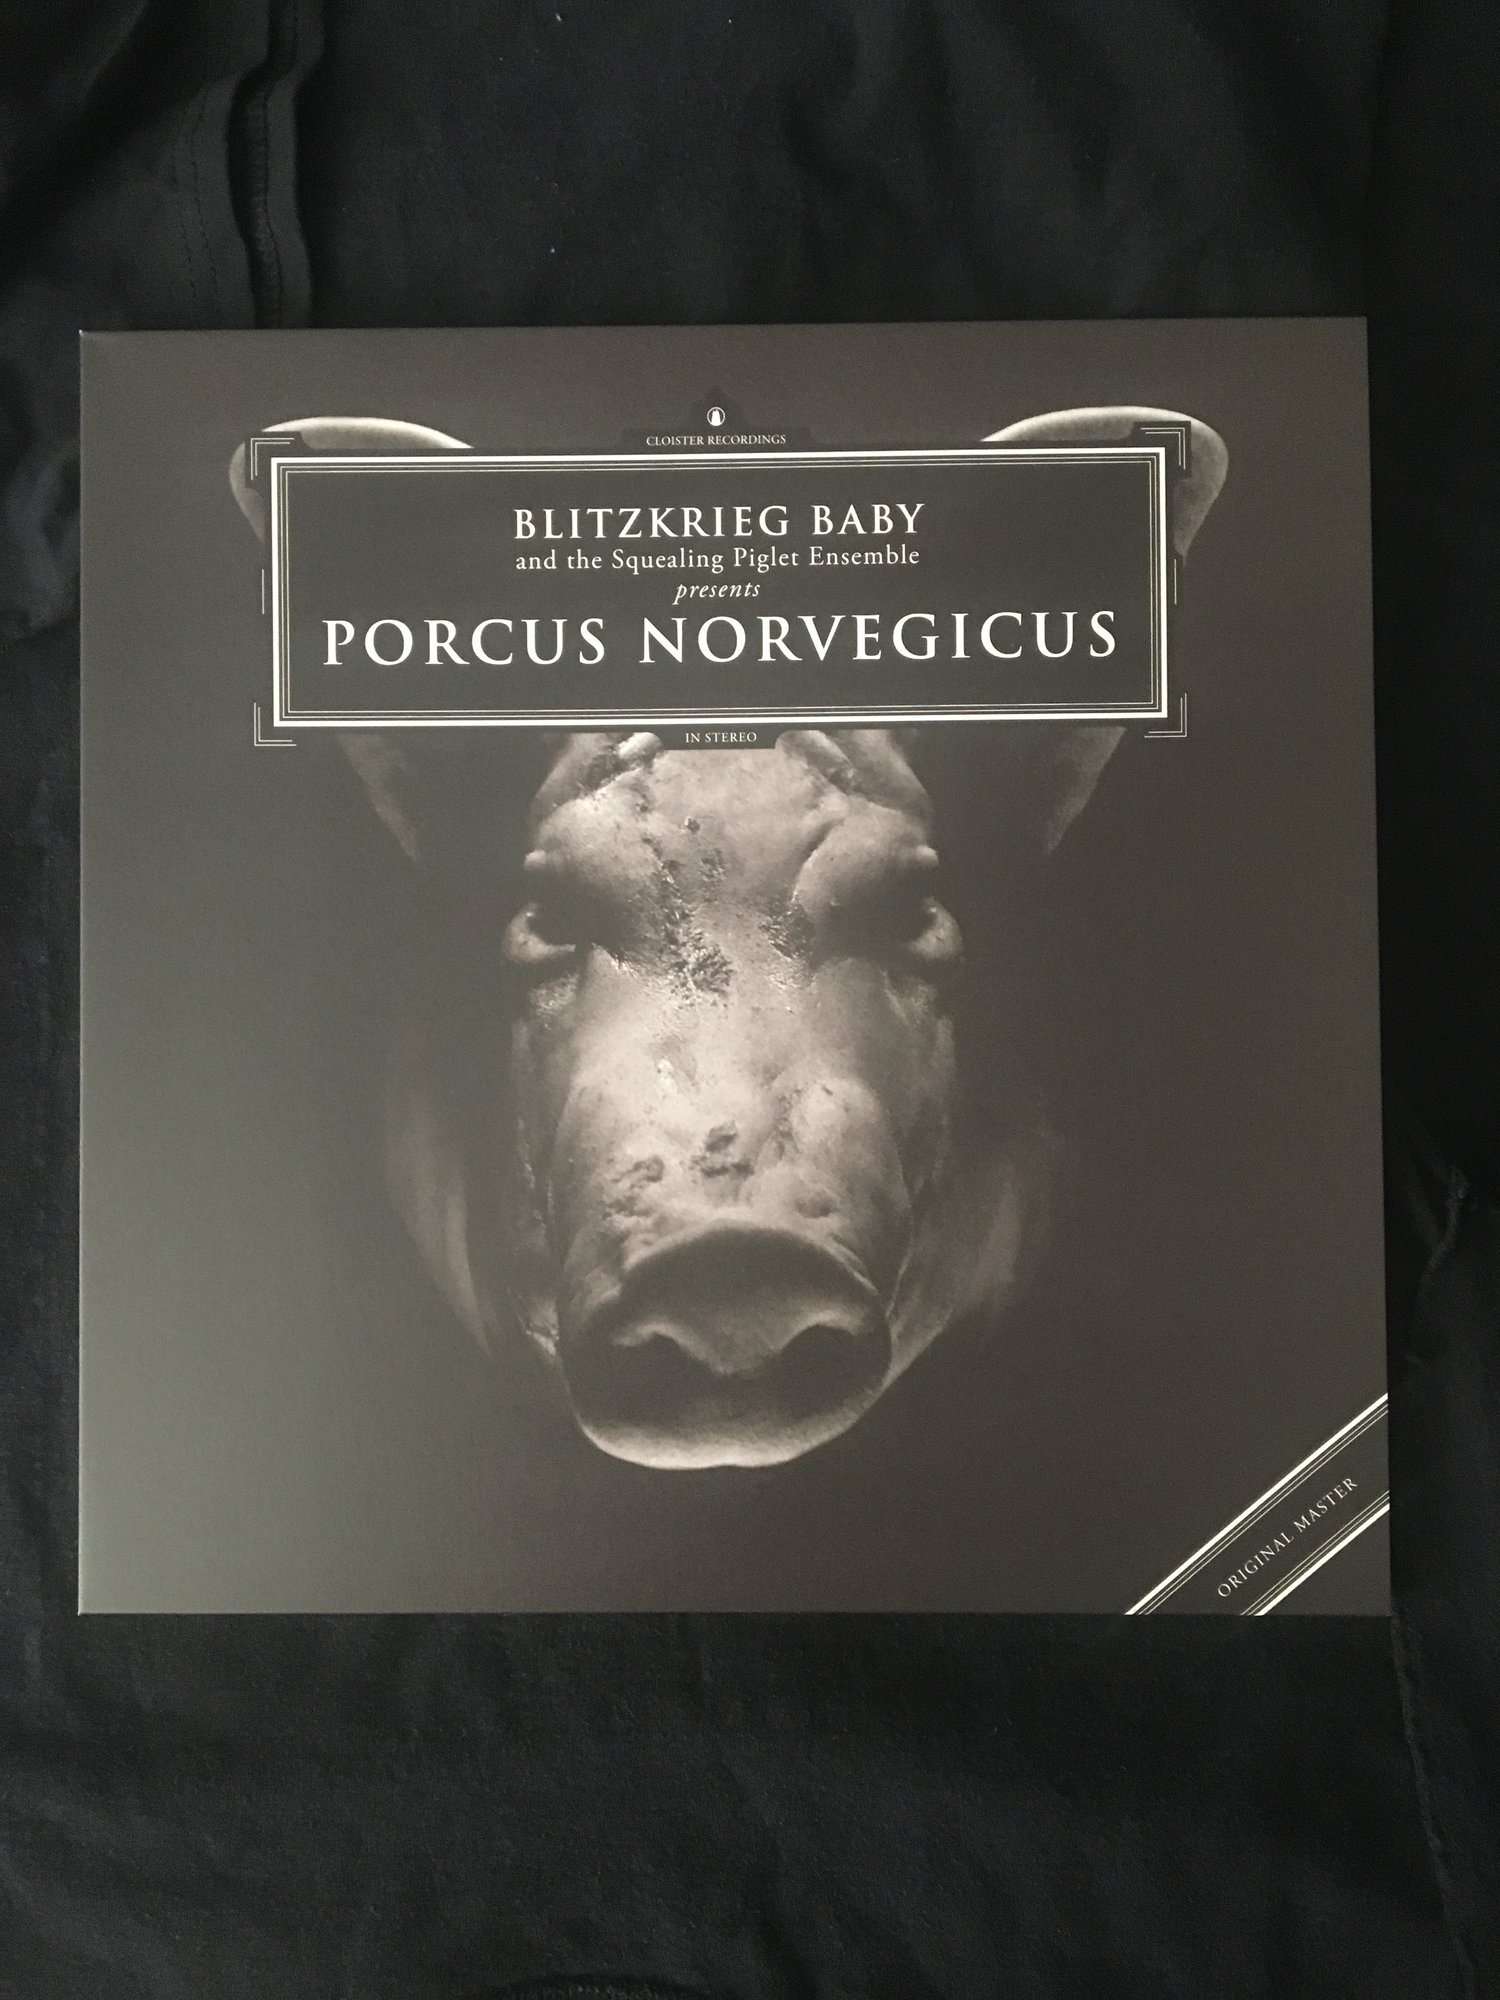 Blitzkrieg Baby - Porcus Norvegicus LP (CRUS-54)